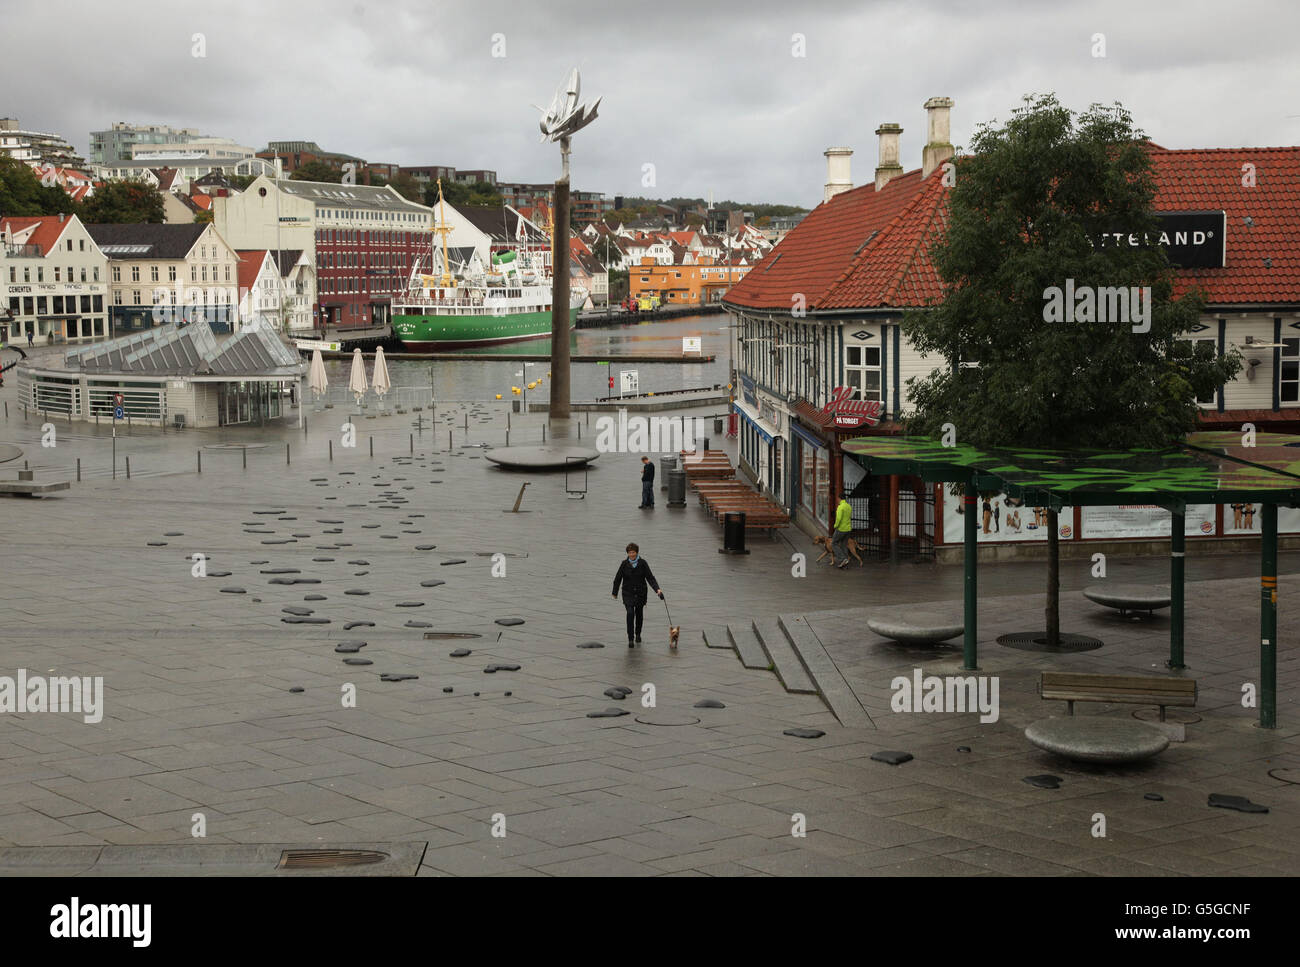 Un'opera raffigurante il gocciolamento di olio da un distributore bancario in mare dell'artista francese di strada Wa, a Stavanger, Norvegia, nell'ambito dell'annuale festival di arte urbana e stradale contemporanea Nuart. Foto Stock